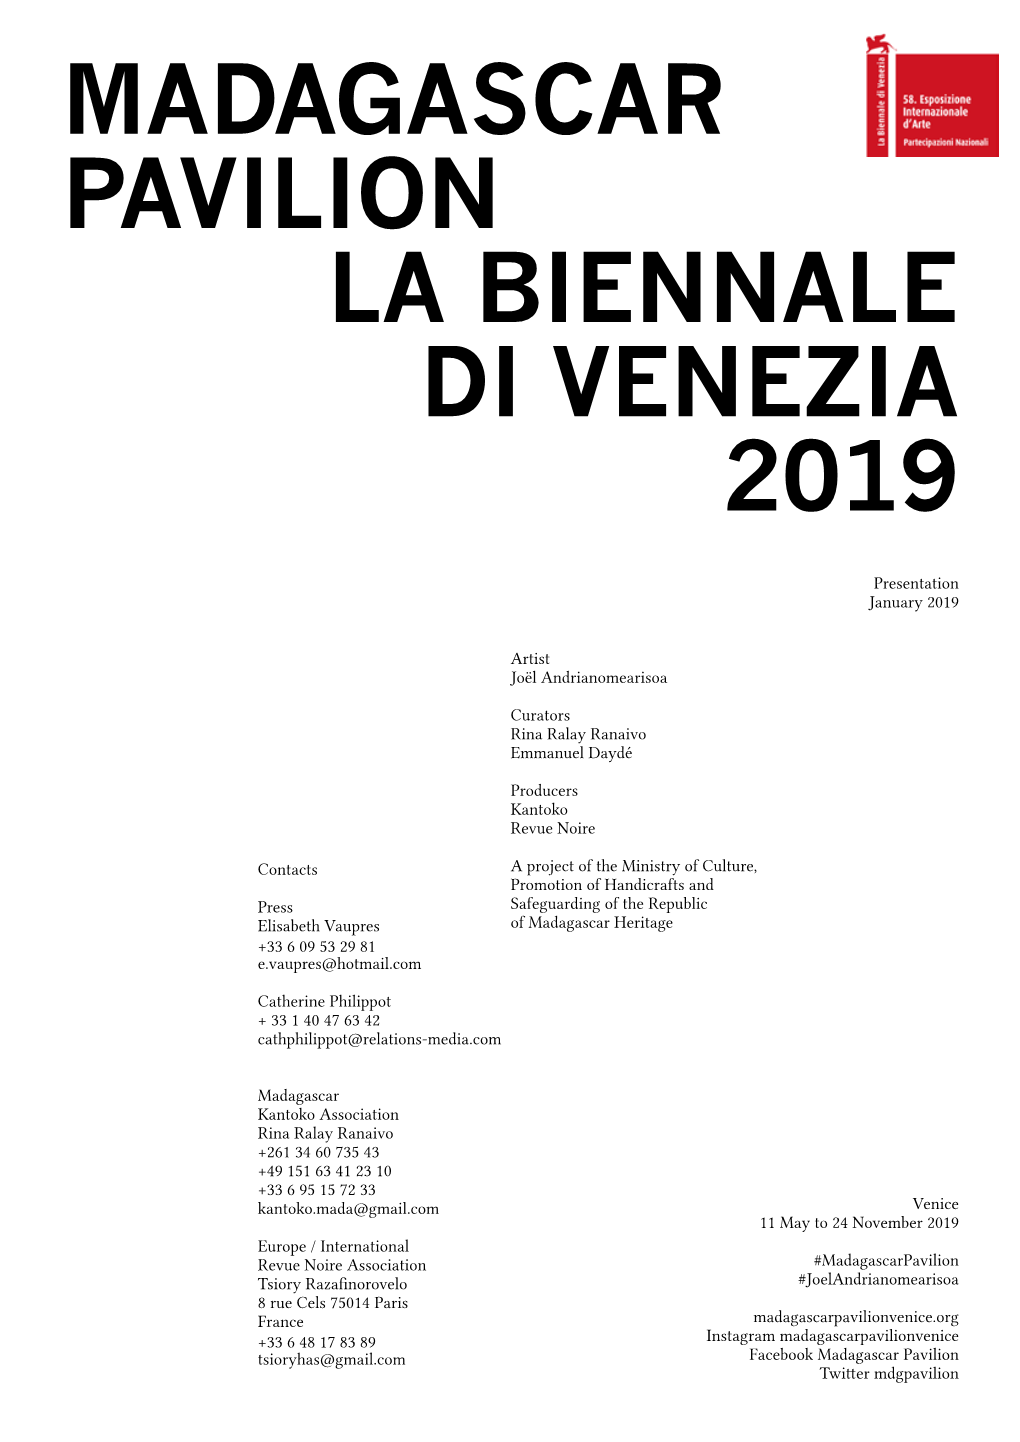 Madagascar Pavilion La Biennale Di Venezia 2019